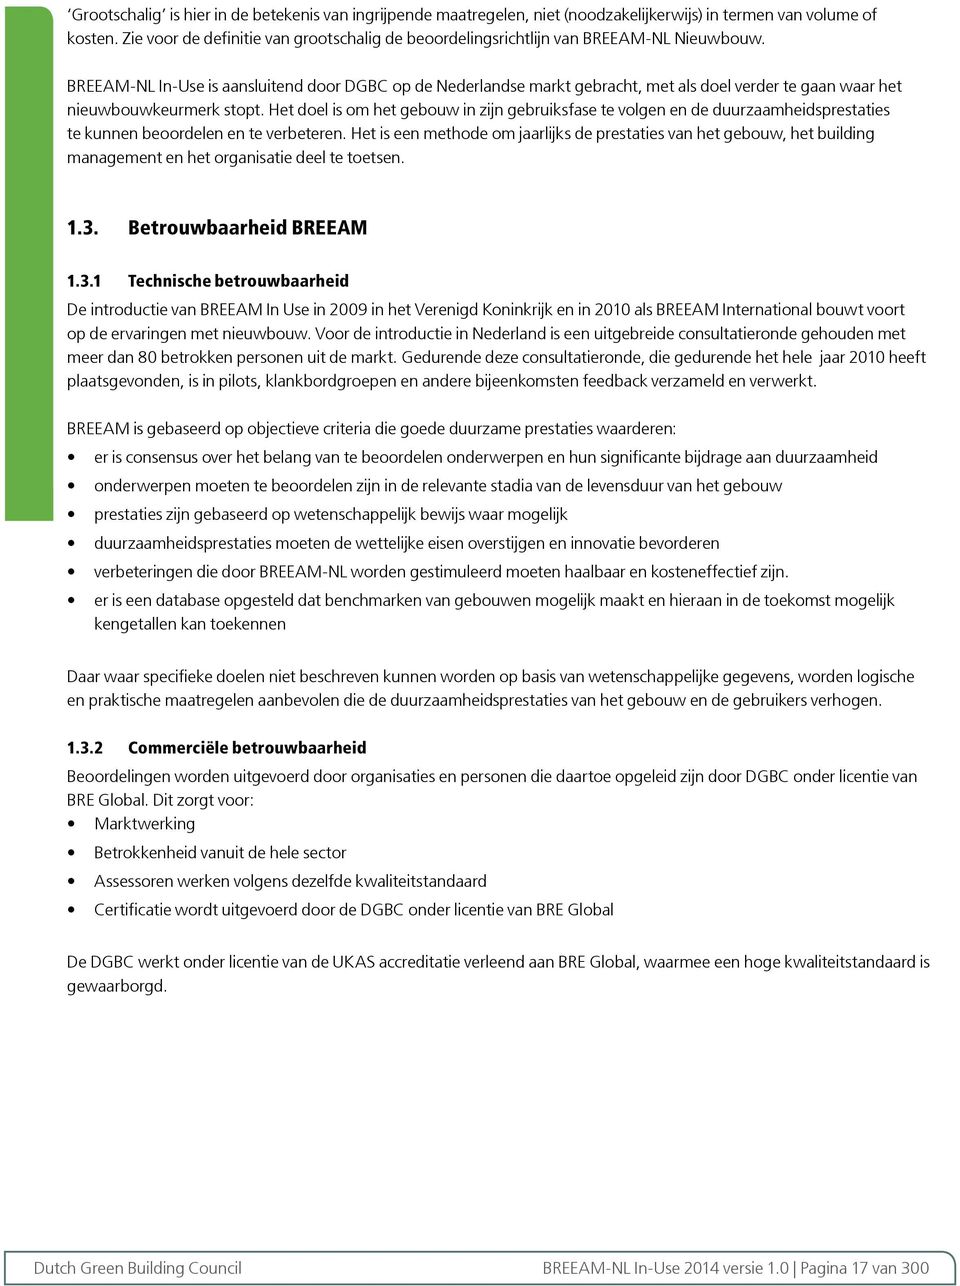 BREEAMNL InUse is aansluitend door DGBC op de Nederlandse markt gebracht, met als doel verder te gaan waar het nieuwbouwkeurmerk stopt.